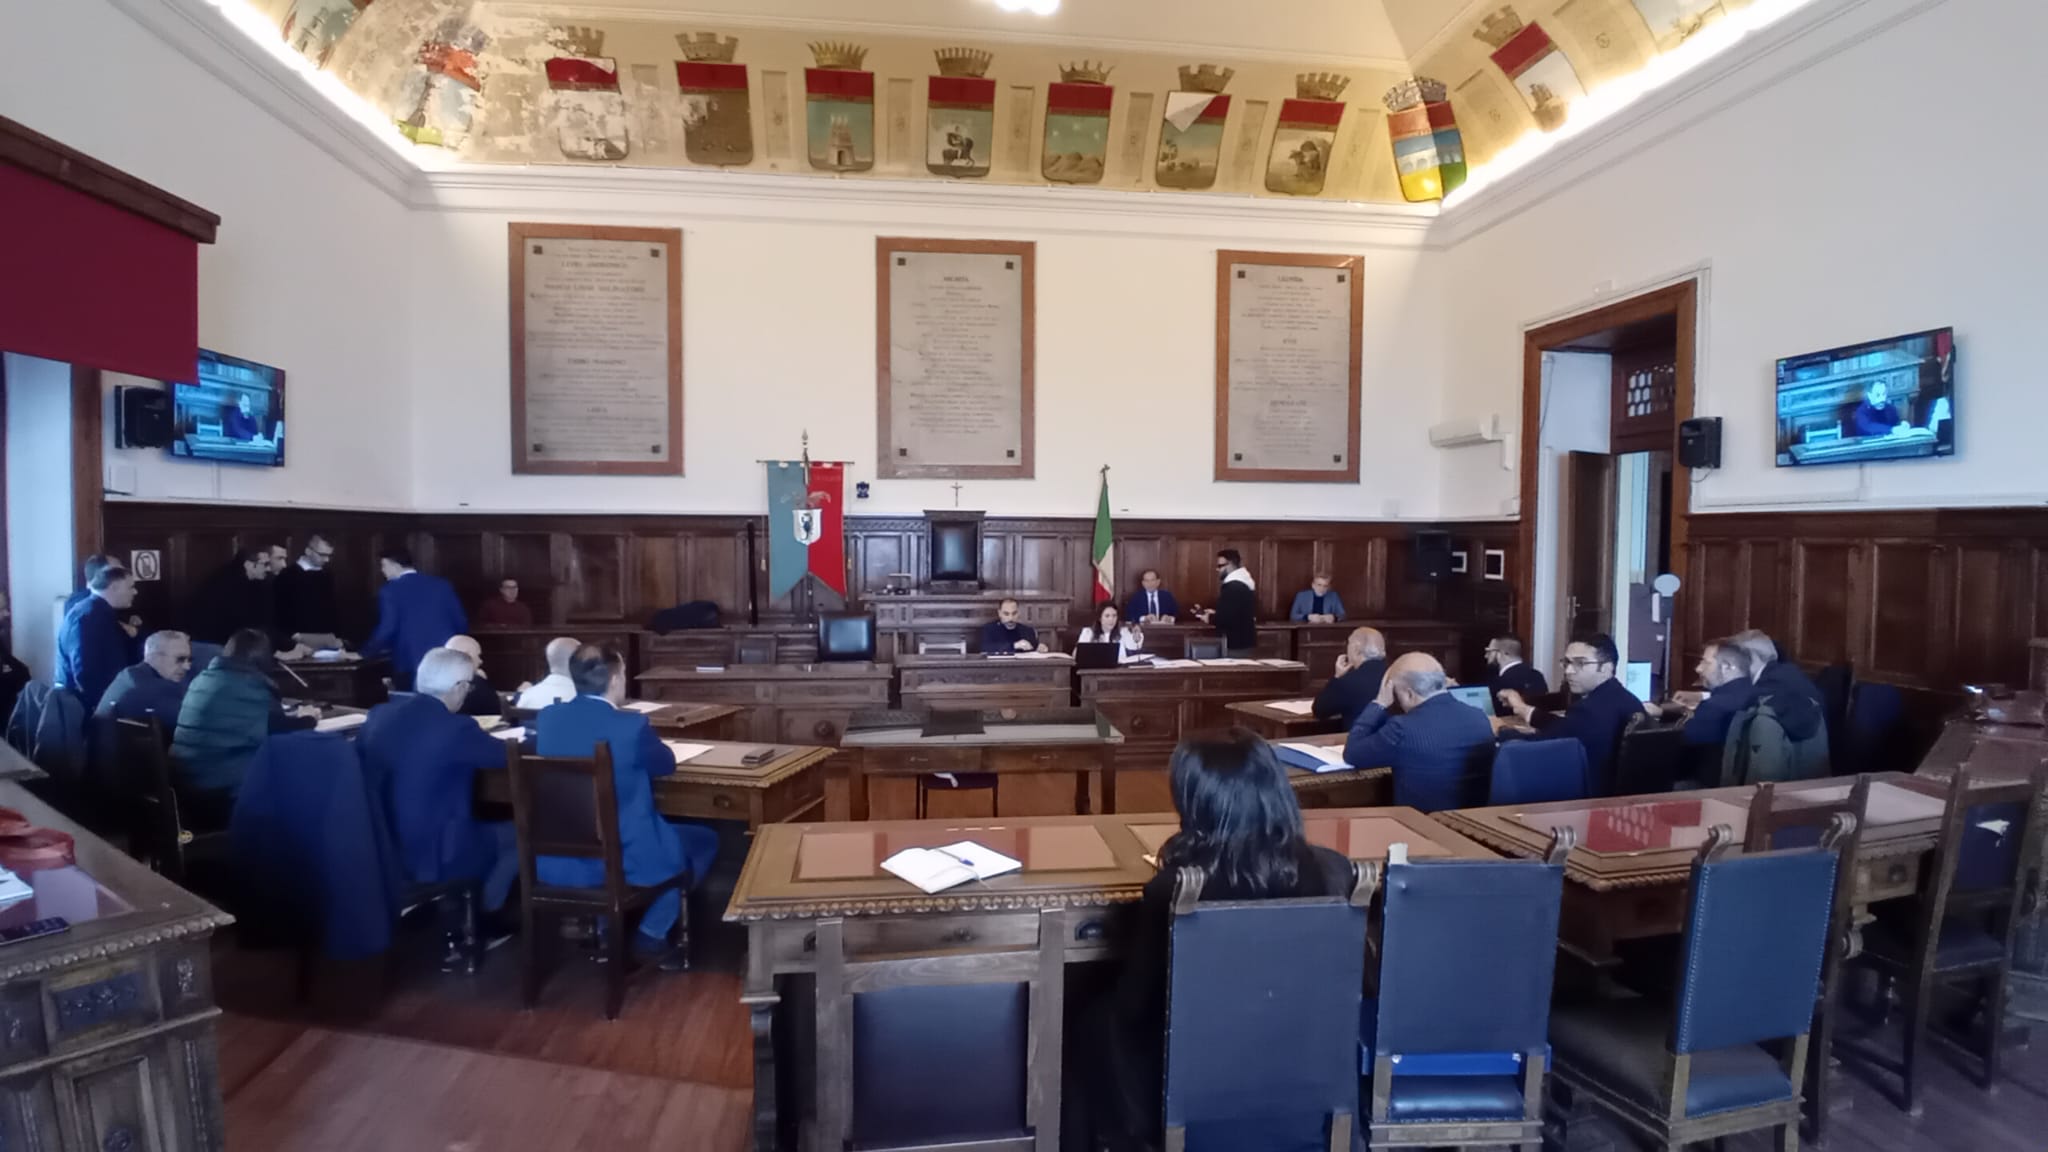 Prima seduta del consiglio provinciale neoeletto